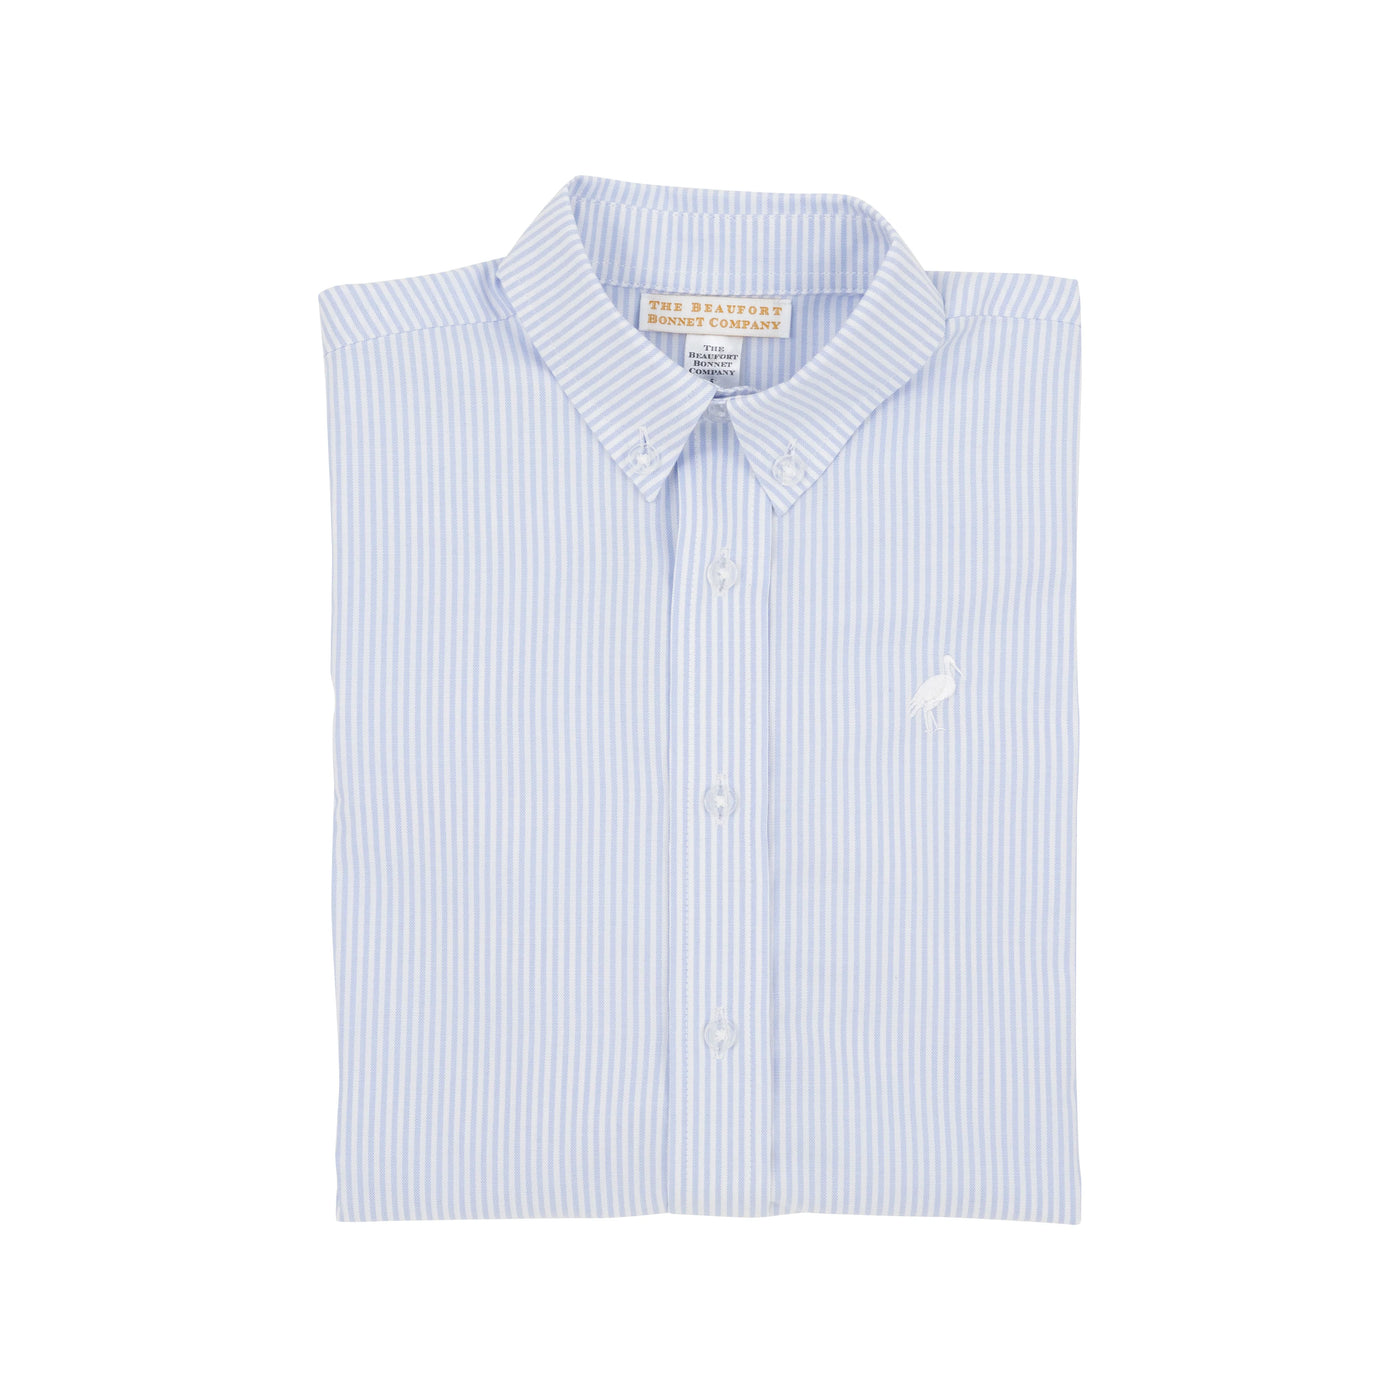 Buckhead Blue Oxford Stripe Dean's List Dress Shirt